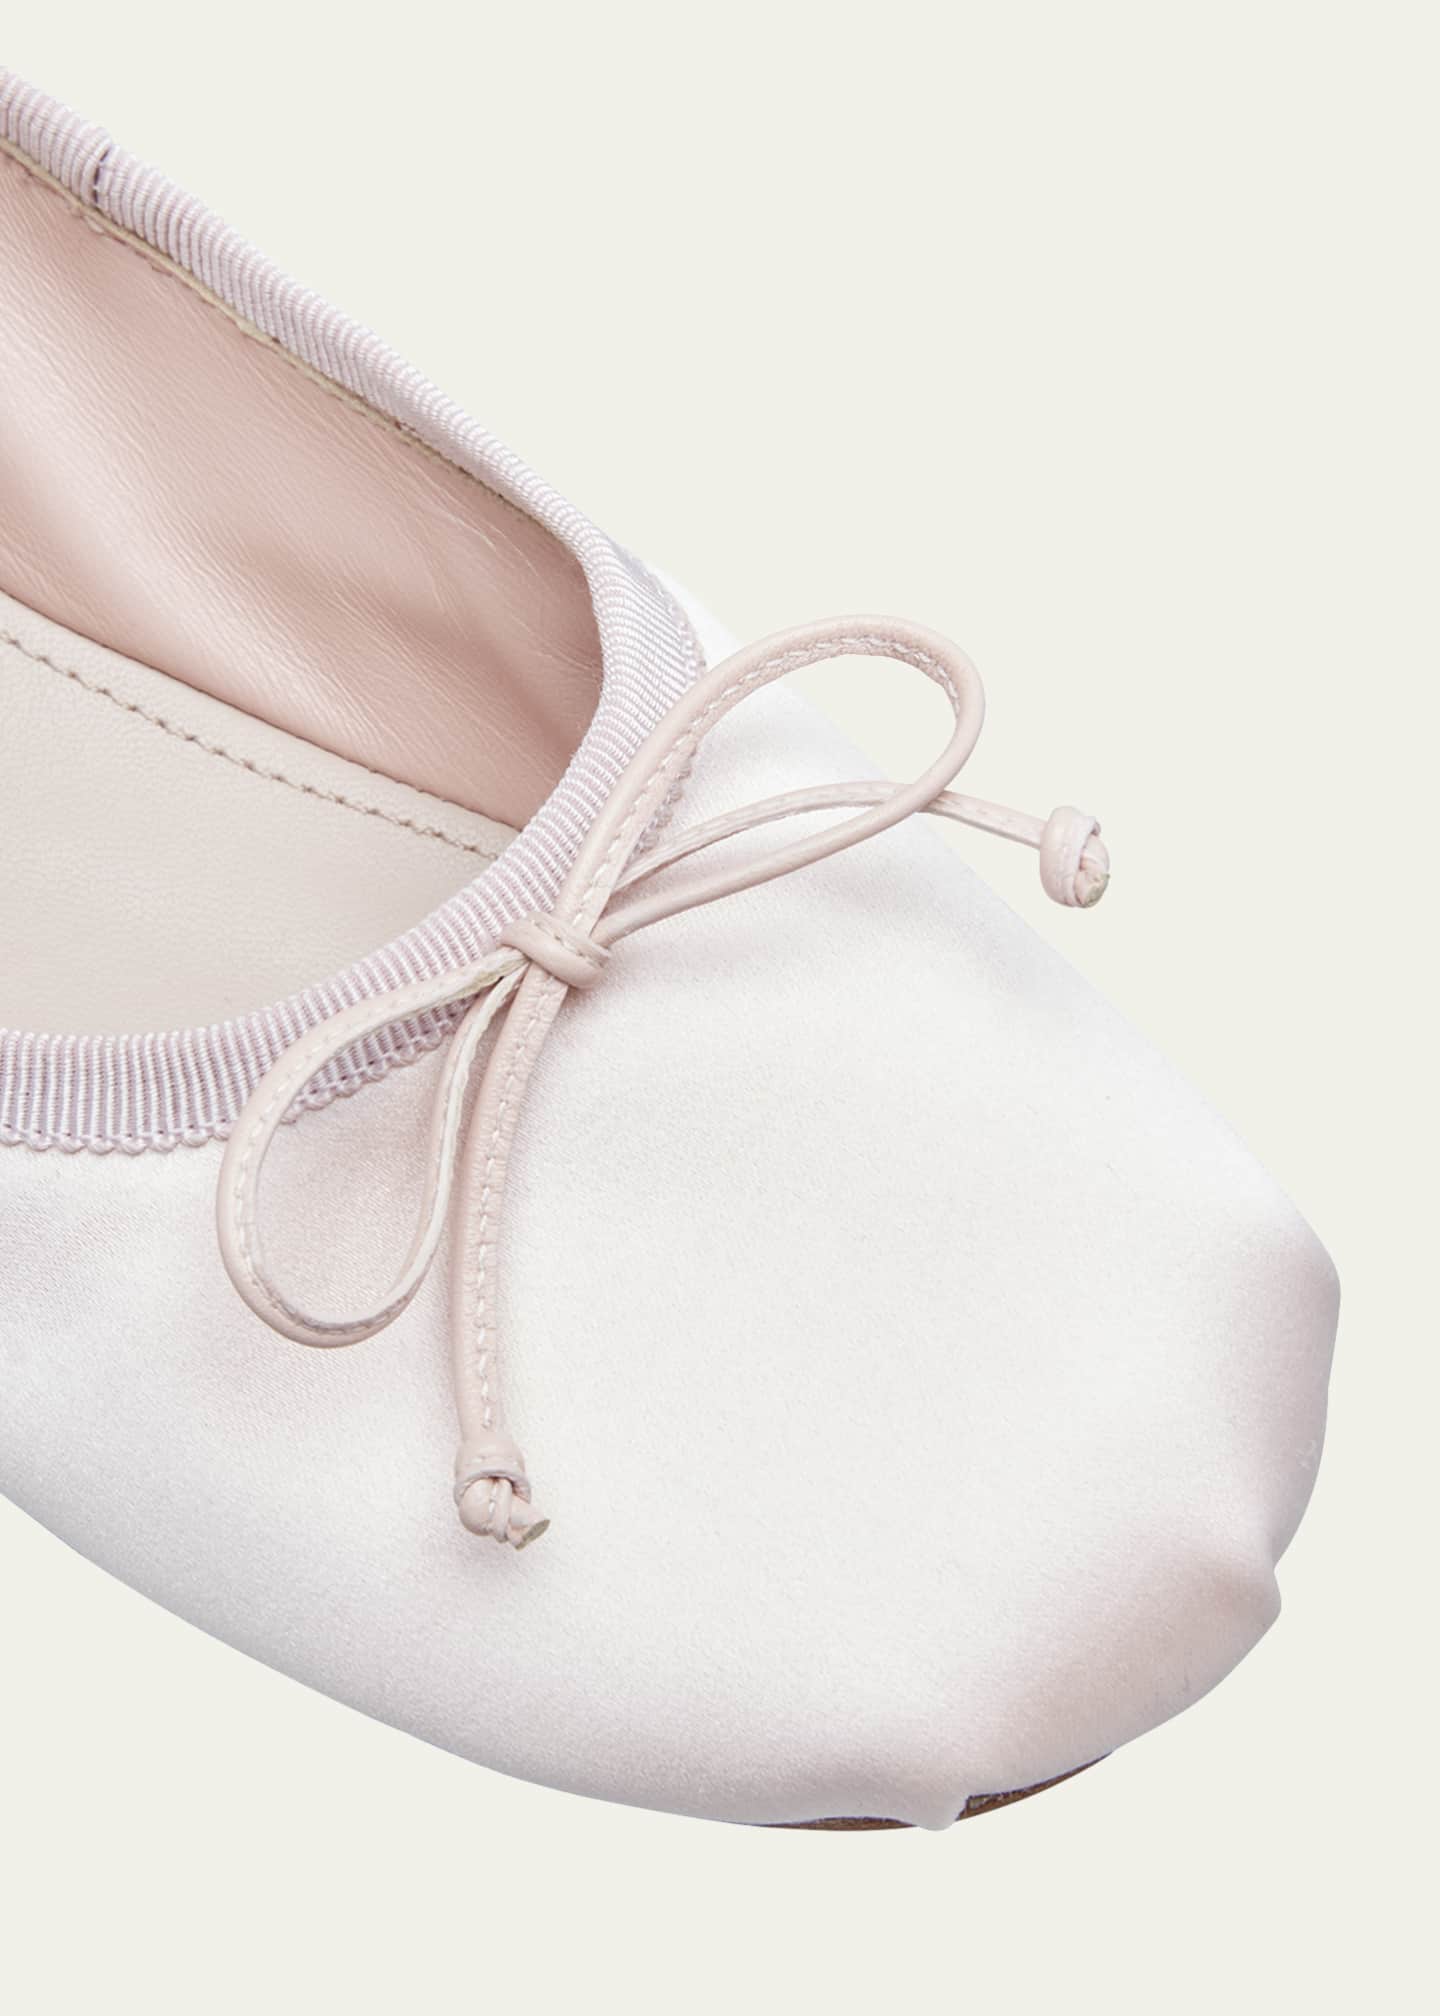 Miu Miu Satin Bow Ballerina Flats - Bergdorf Goodman